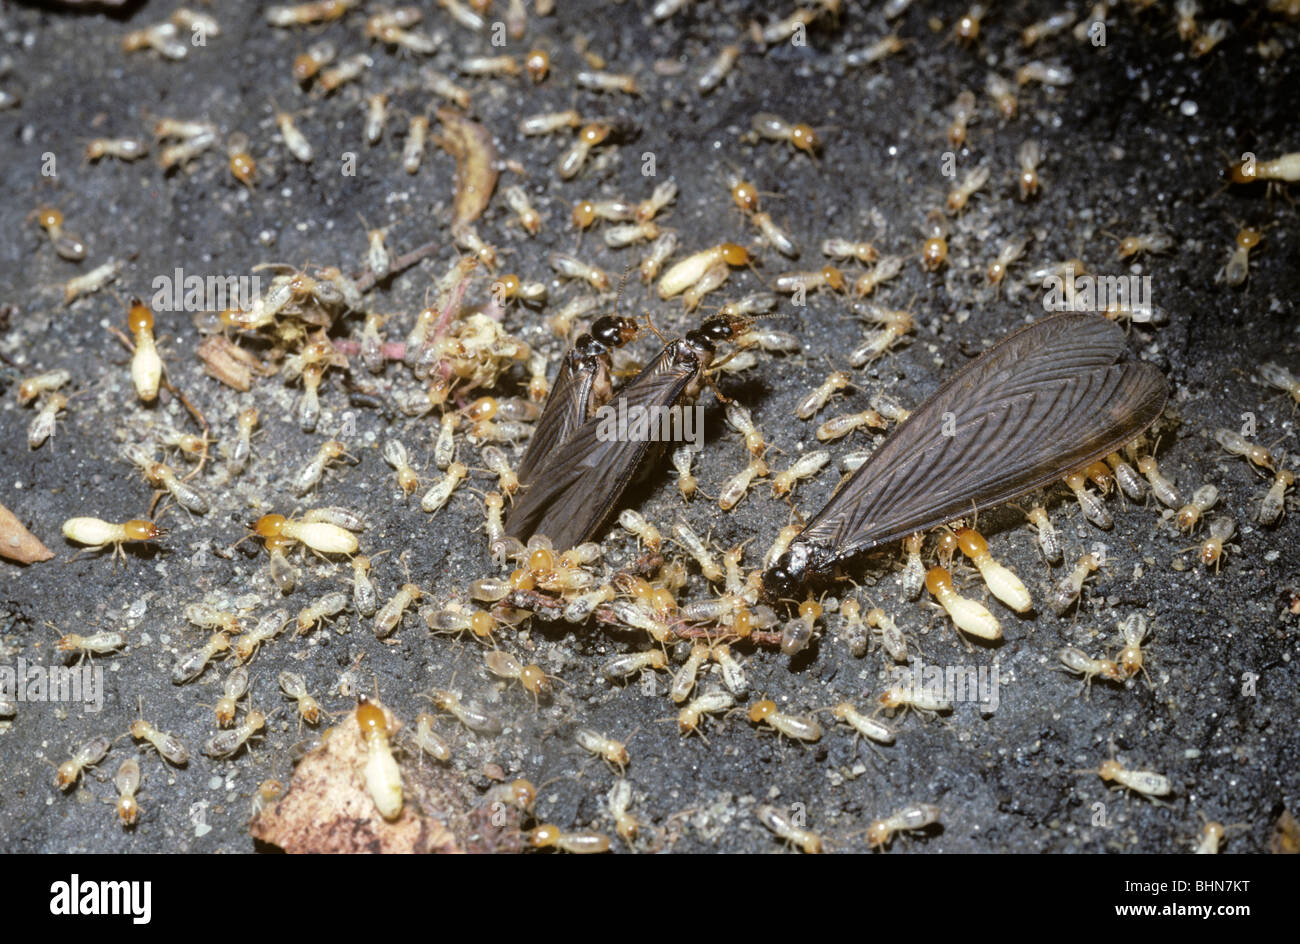 Las termitas con alas termitas aladas (cf. Odontotermes obesus) se libera del nido por los trabajadores durante una tormenta de truenos, Nepal Foto de stock